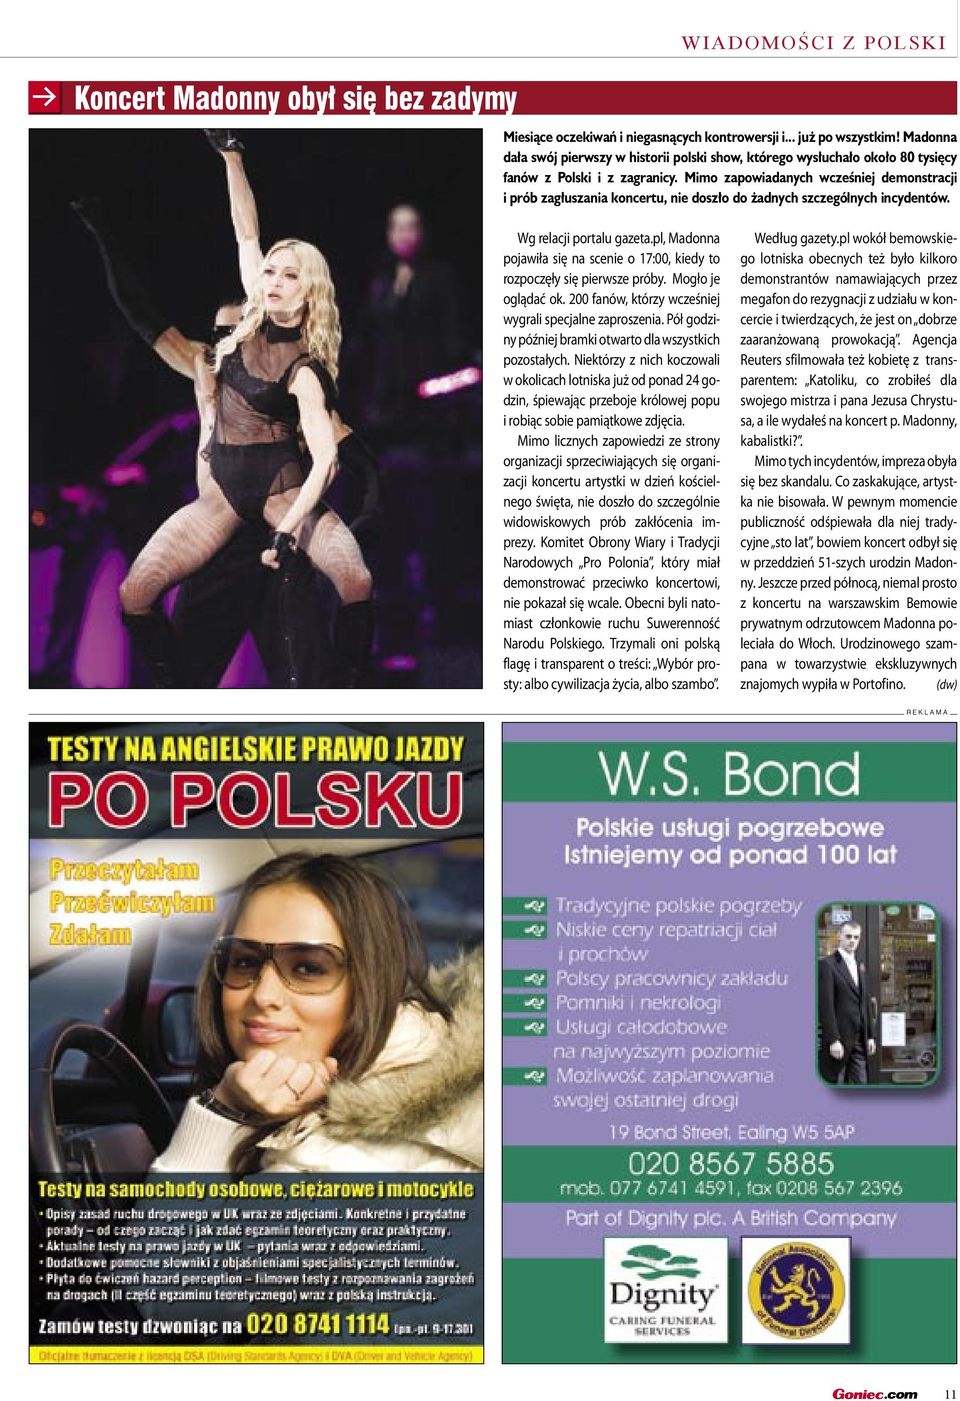 Madonna dała swój pierwszy w historii polski show, którego wysłuchało około 80 tysięcy